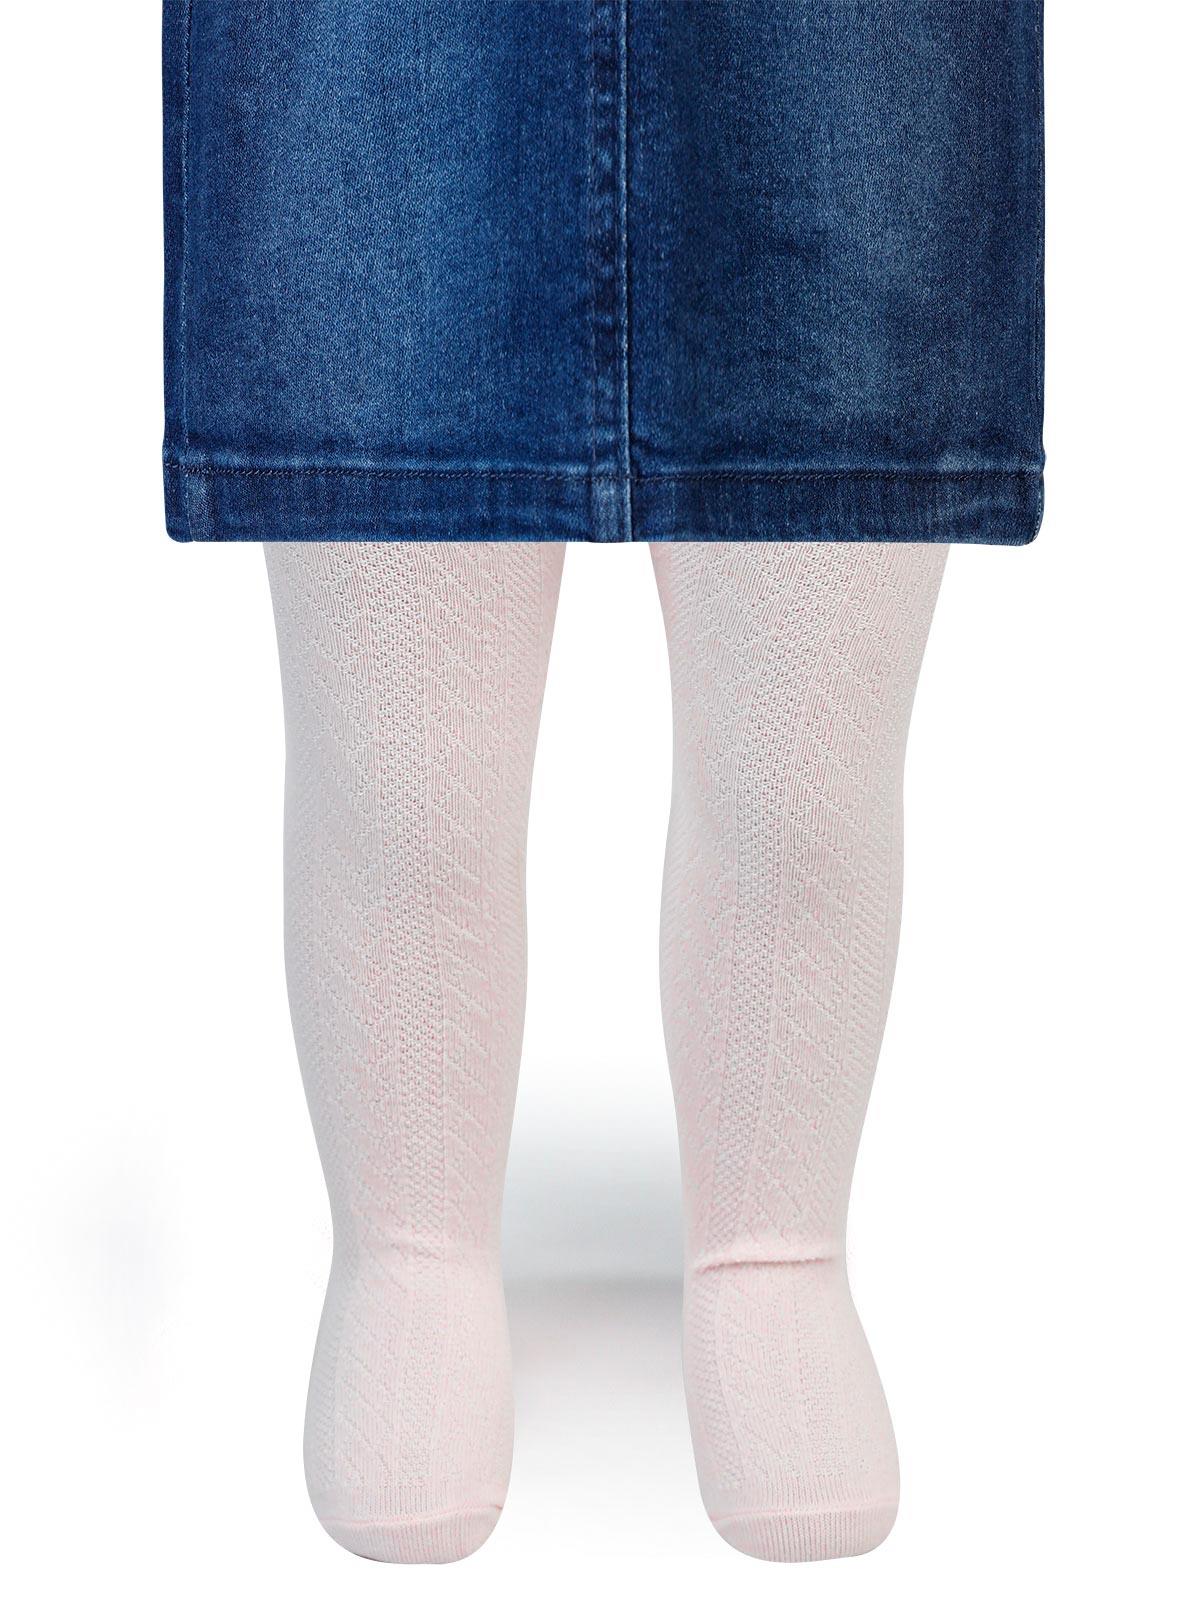 Artı Kız Bebek Külotlu Çorap 6-18 Ay Pembe